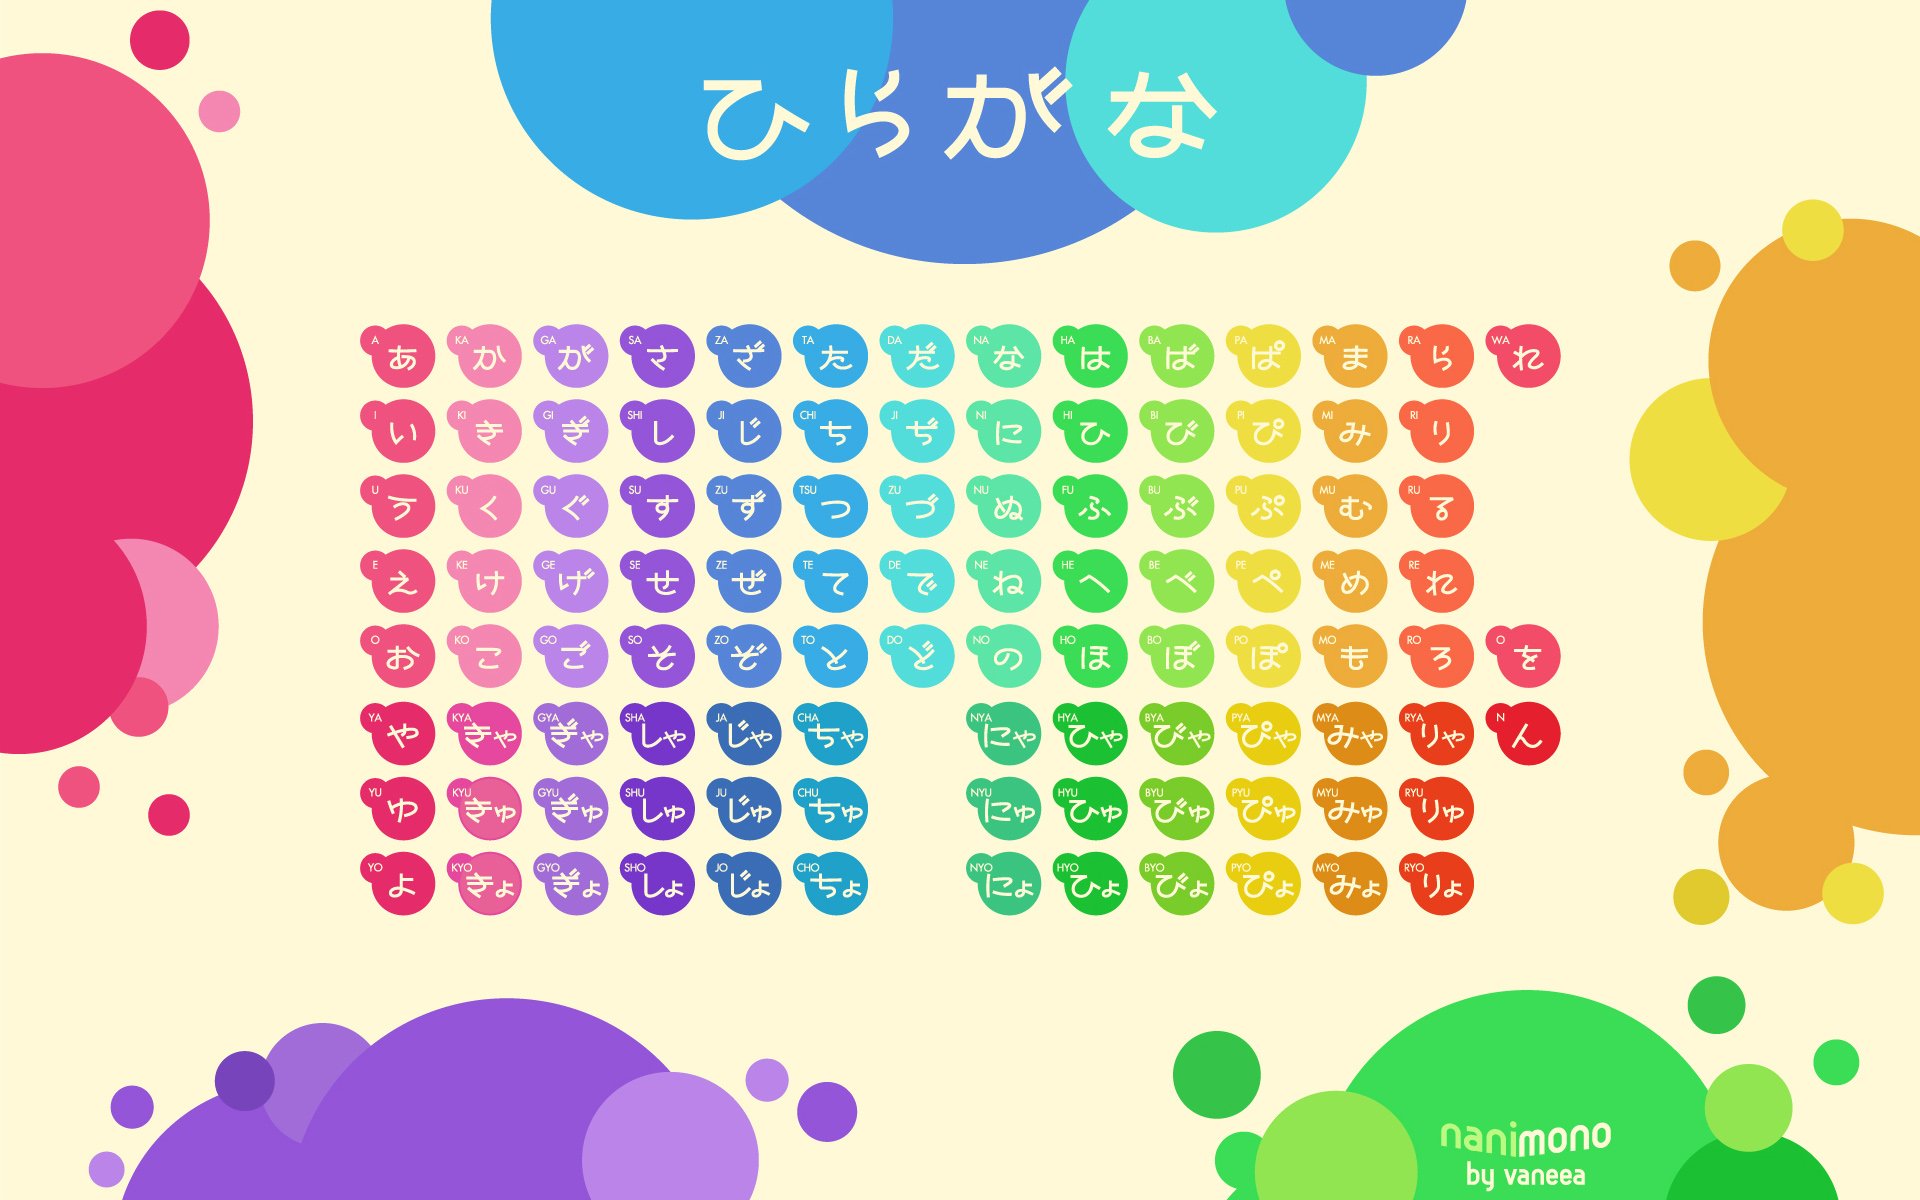 japanese, Circles, Tables, Typography, Rainbows, Hiragana Wallpaper